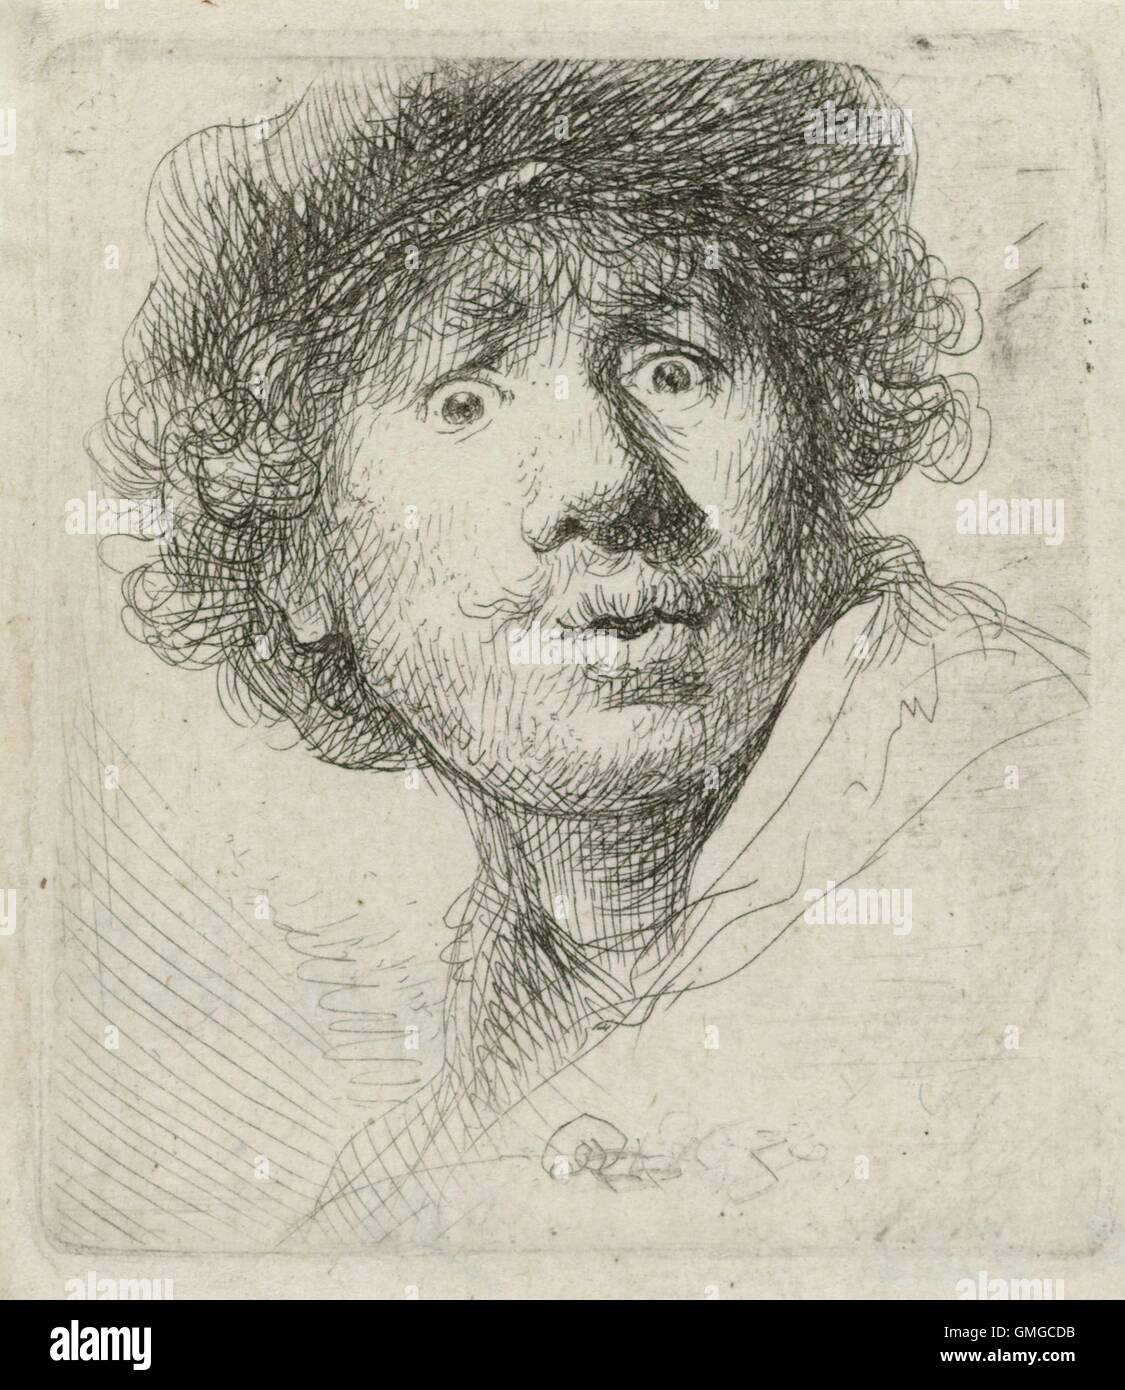 Selbstporträt mit Barett, von Rembrandt van Rijn, 1630, Niederländisch drucken, Radierung auf Papier. Rembrandt war 24, als er diese Radierung (BSLOC 2016 3 25 schuf) Stockfoto